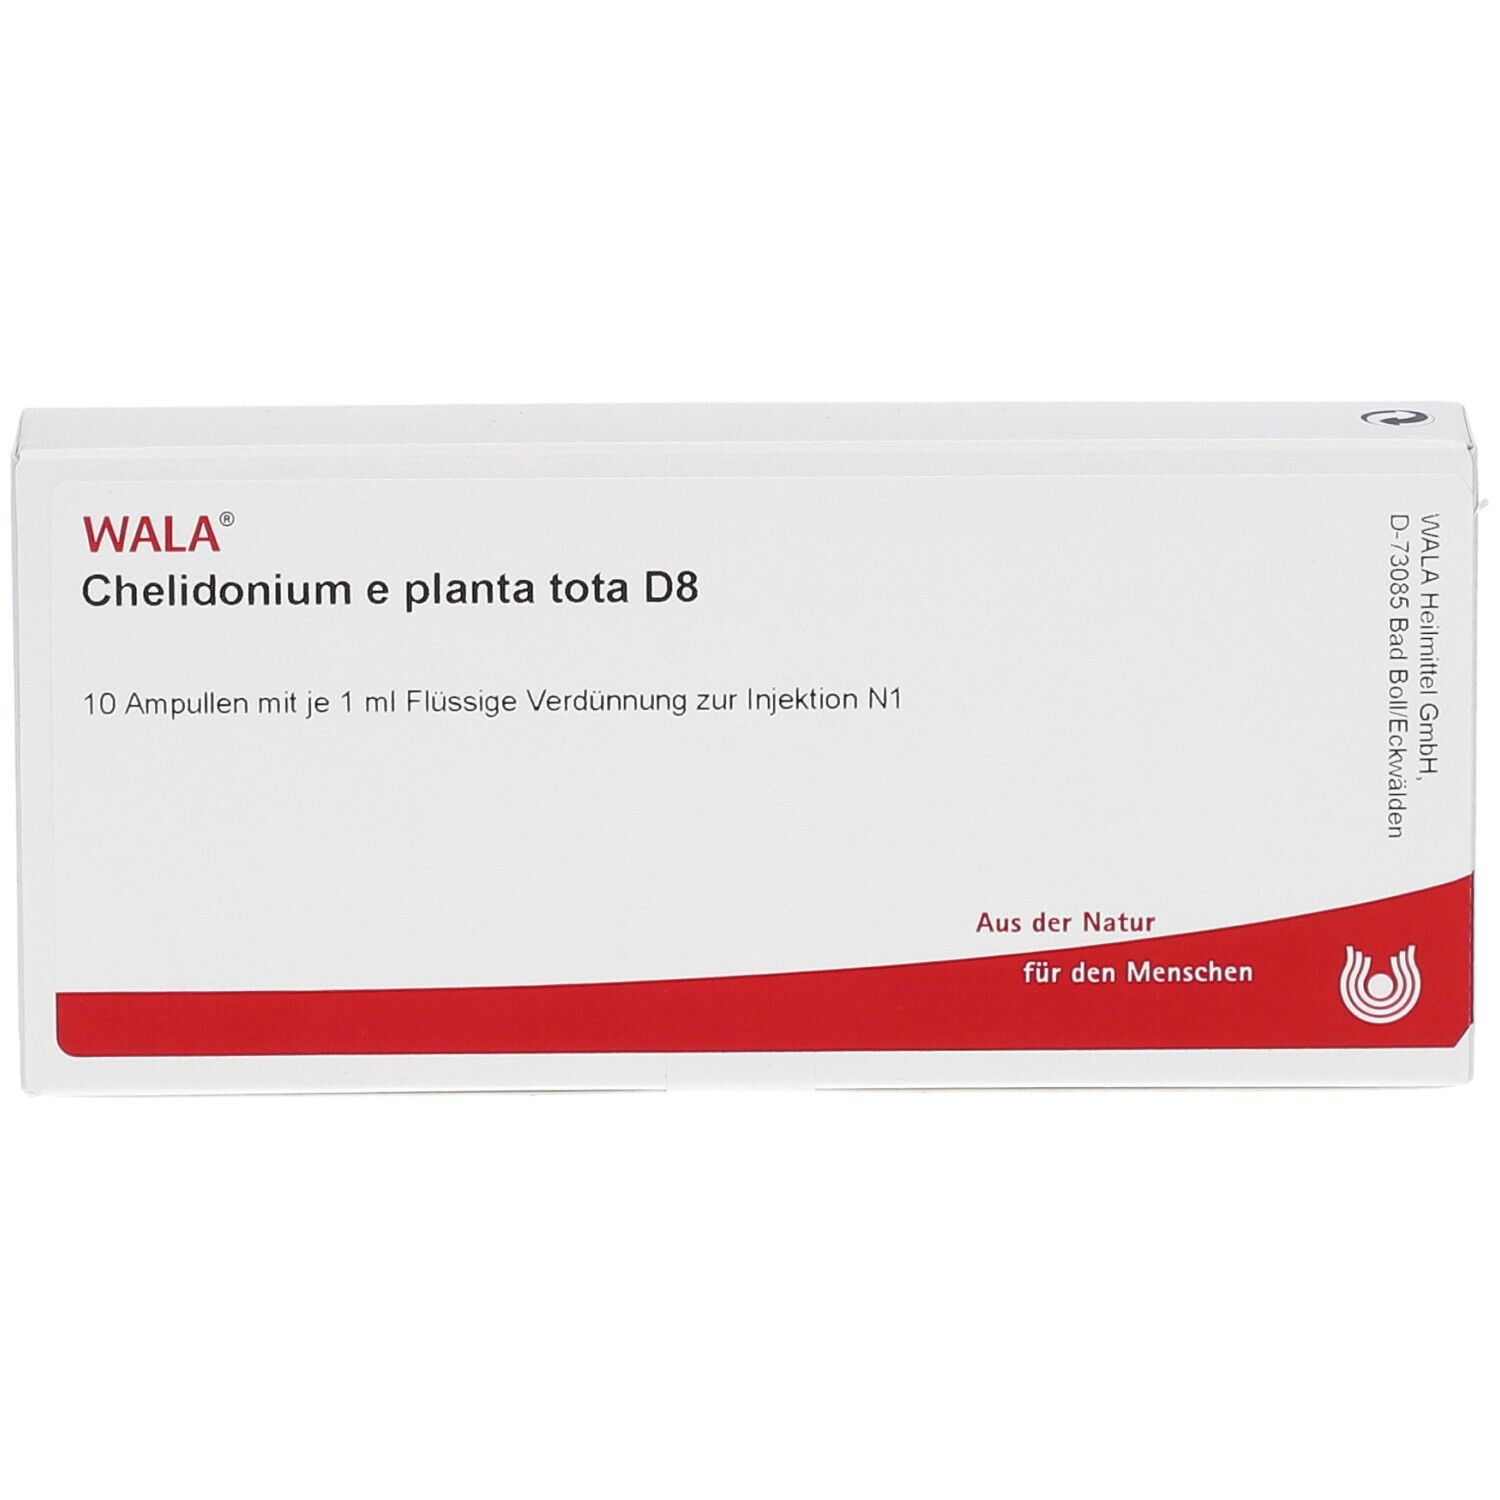 WALA® Chelidonium e planta tota D 8